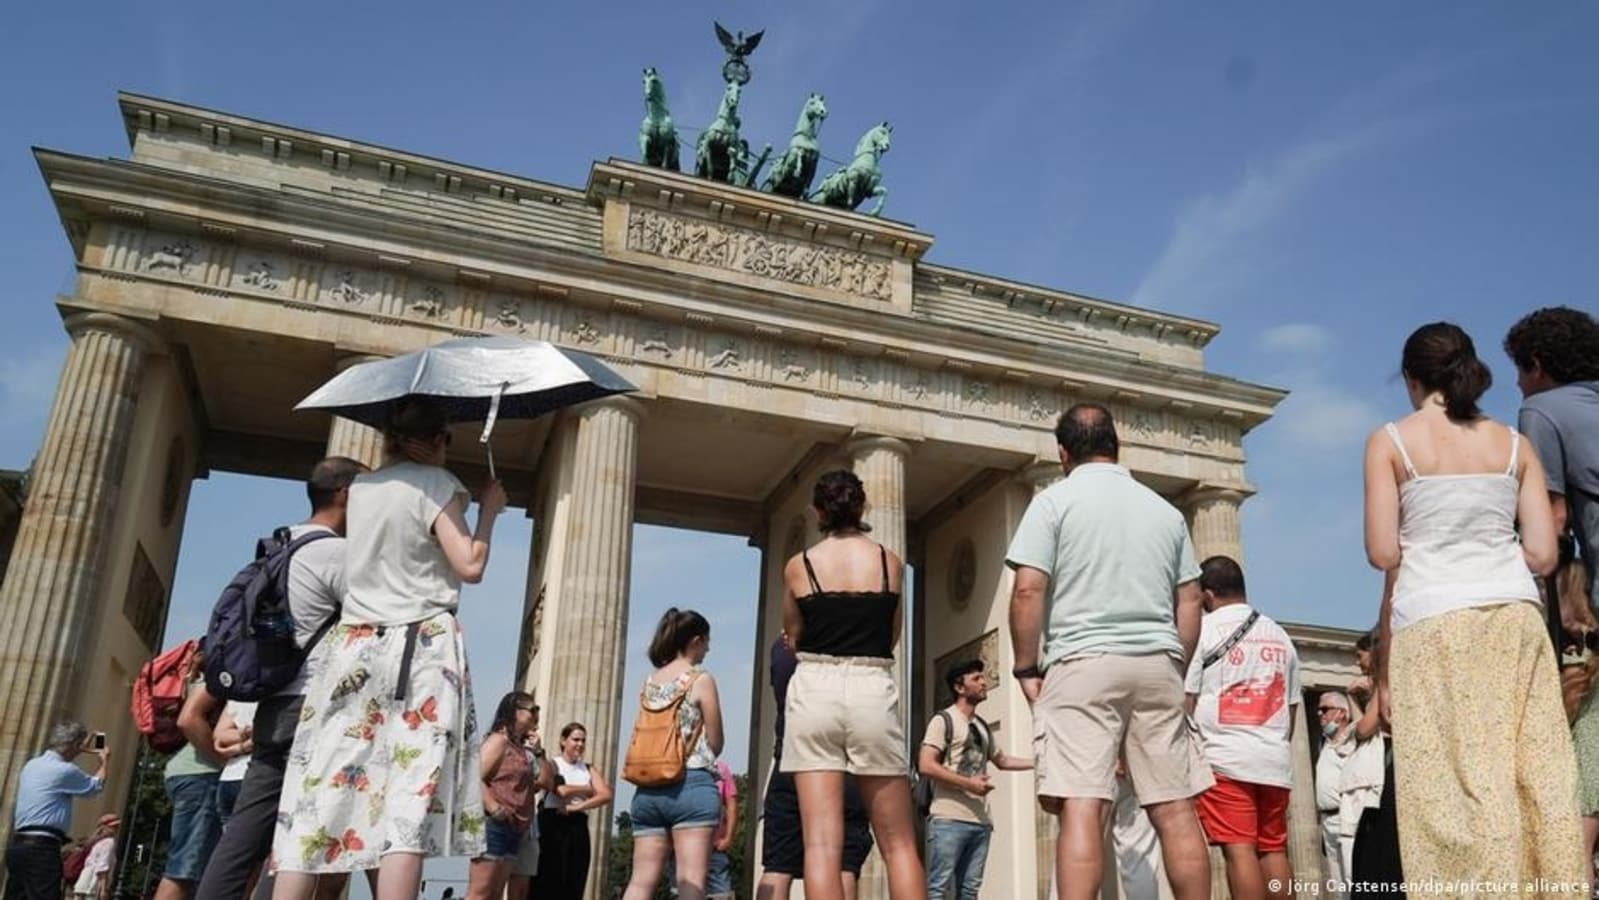 एक विदेशी पर्यटक के रूप में जर्मनी का दौरा: वीज़ा की आवश्यकता किसे है?